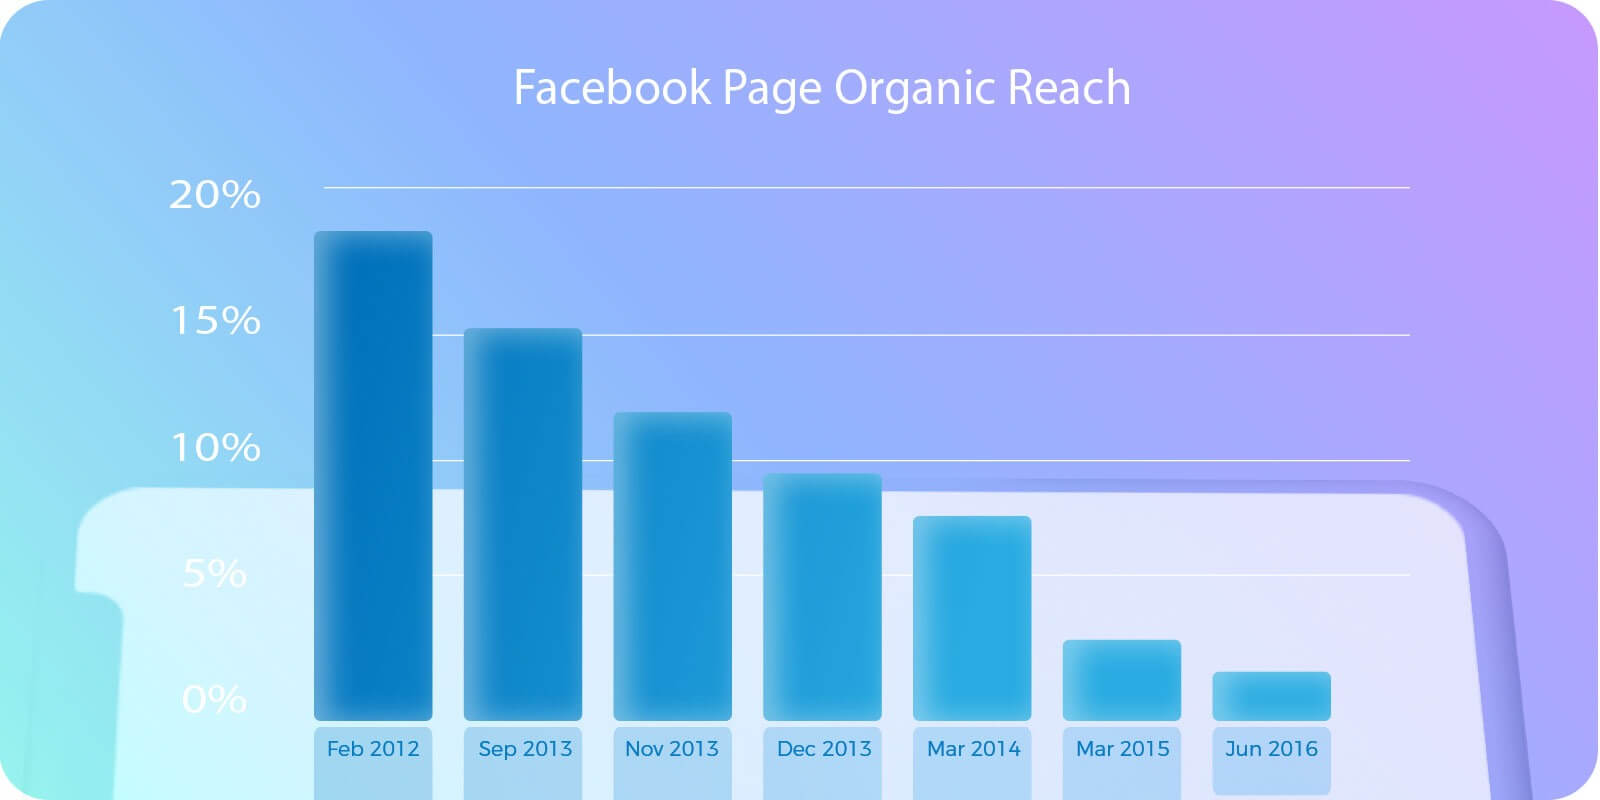 grafico de la evolucion del alcance del trafico organico en Facebook